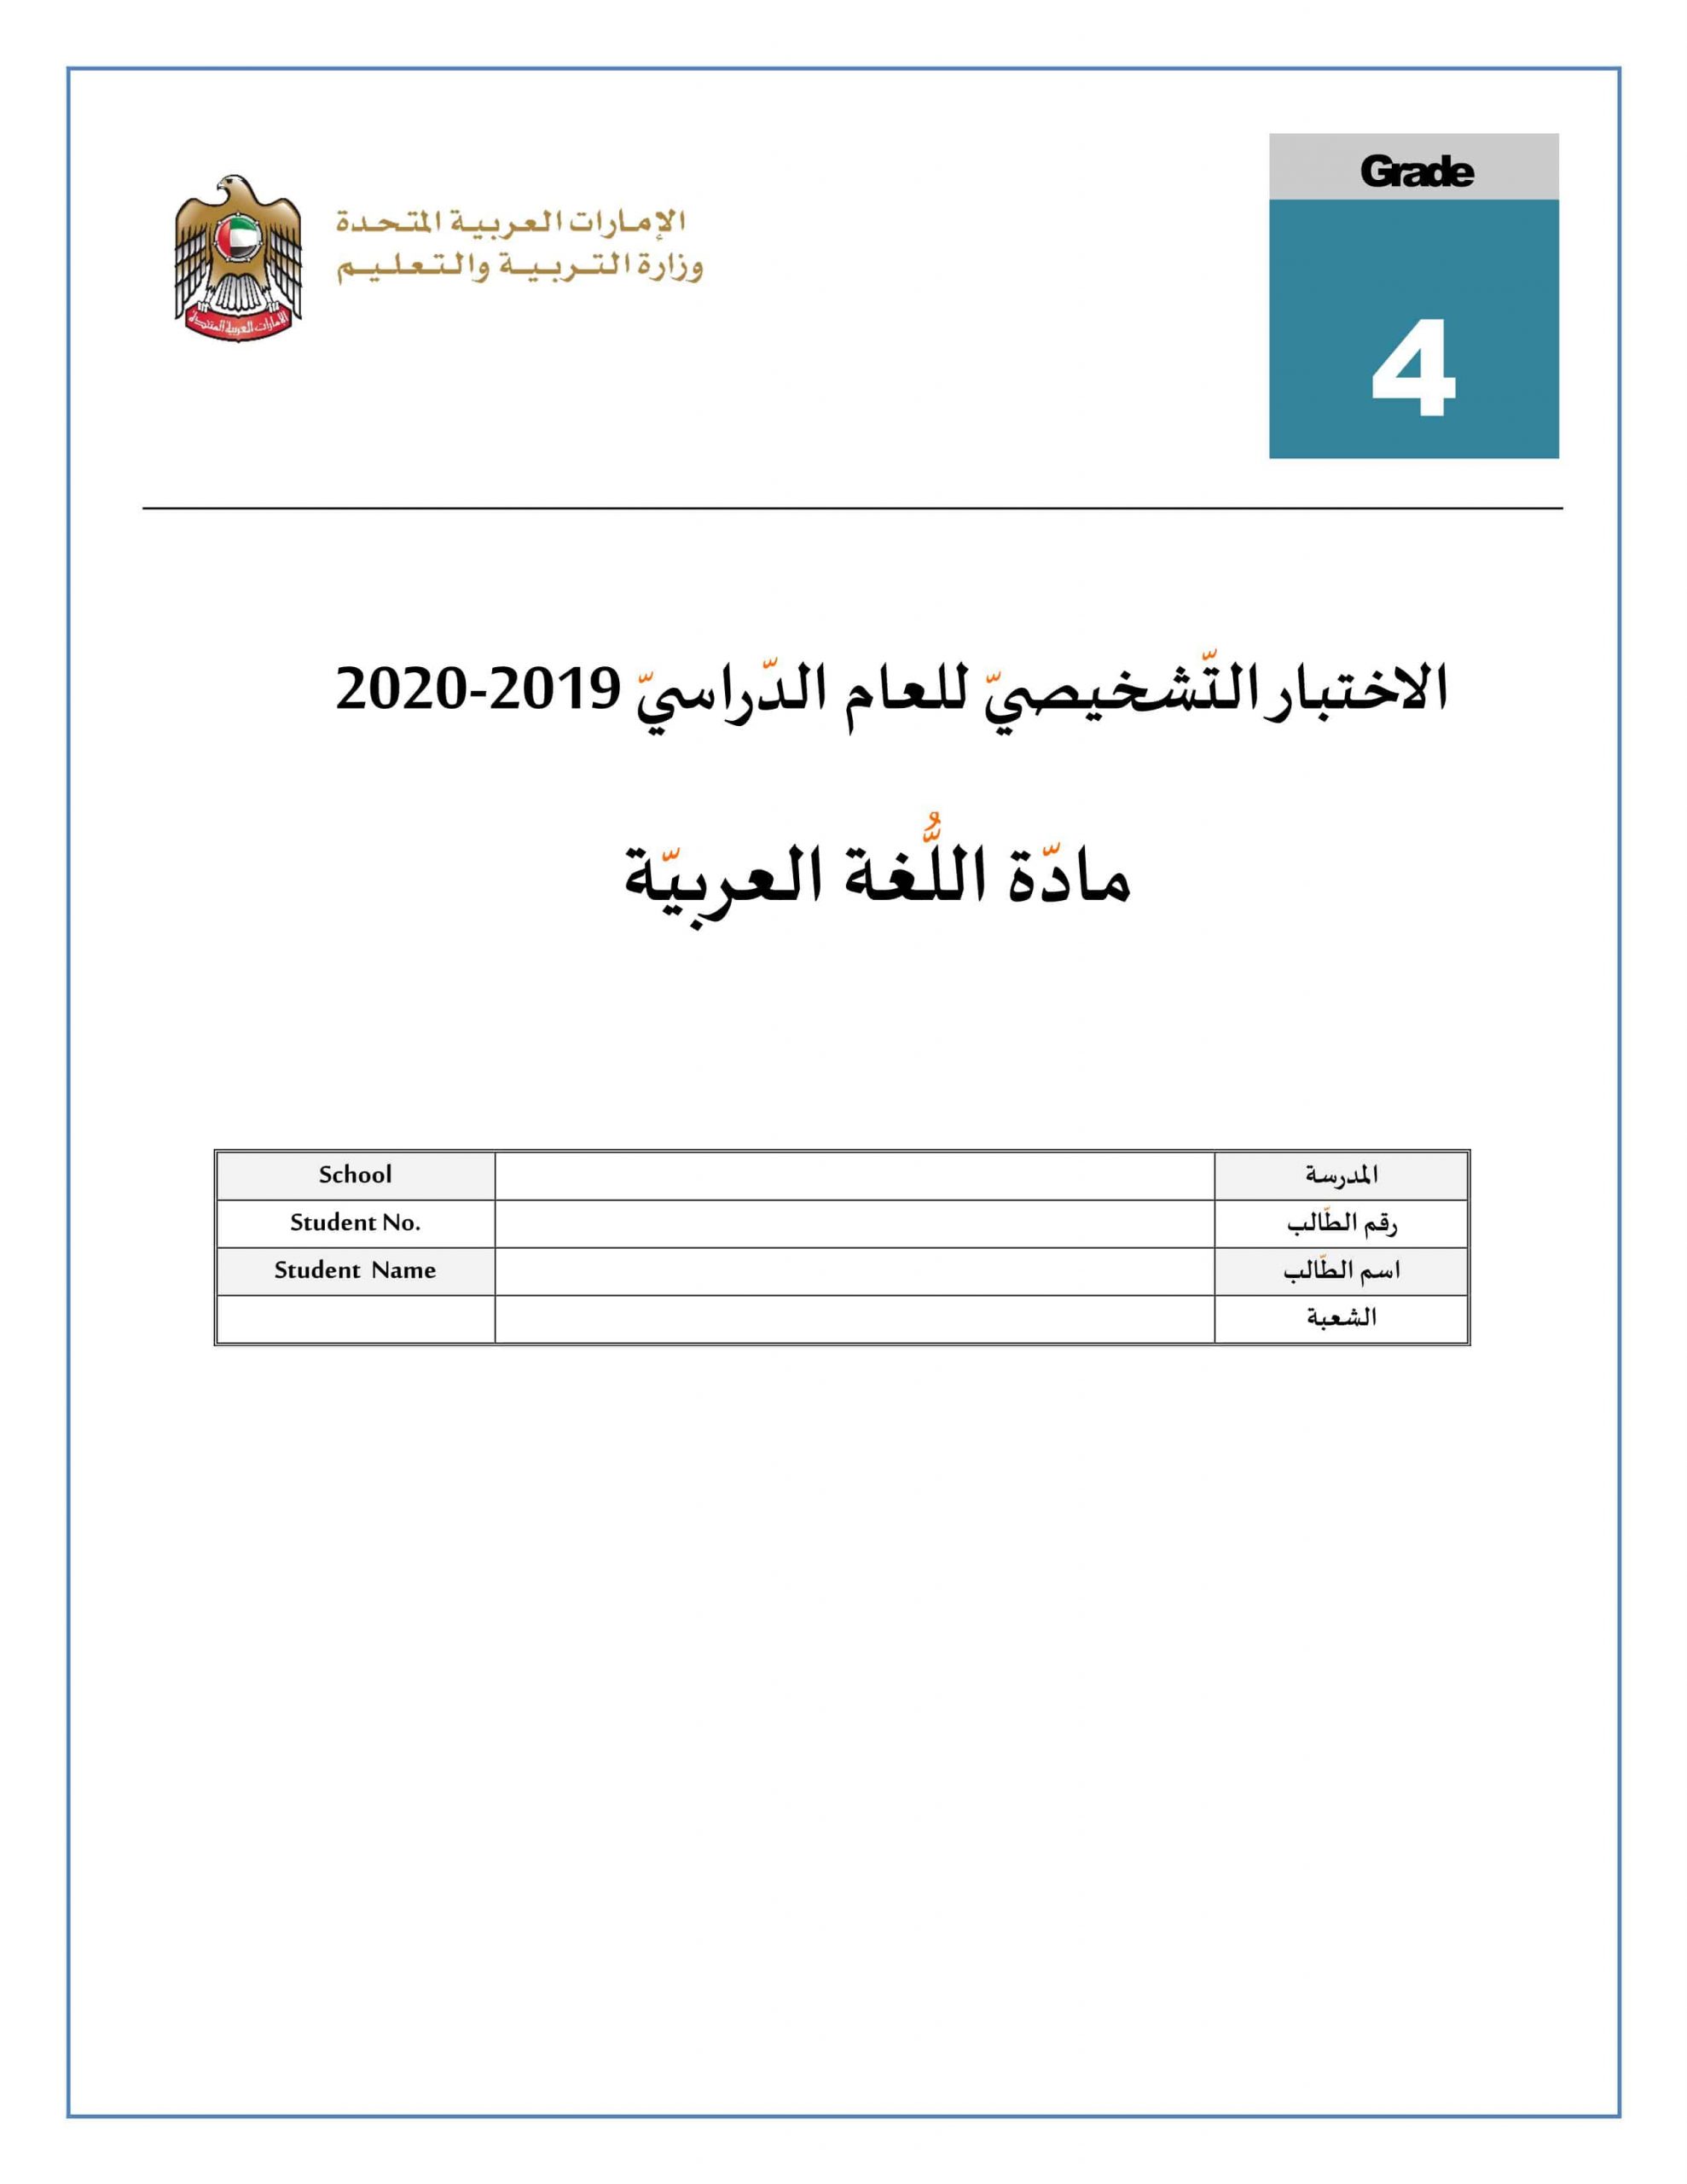 الاختبار التشخيصي 2019-2020 الصف الرابع مادة اللغة العربية